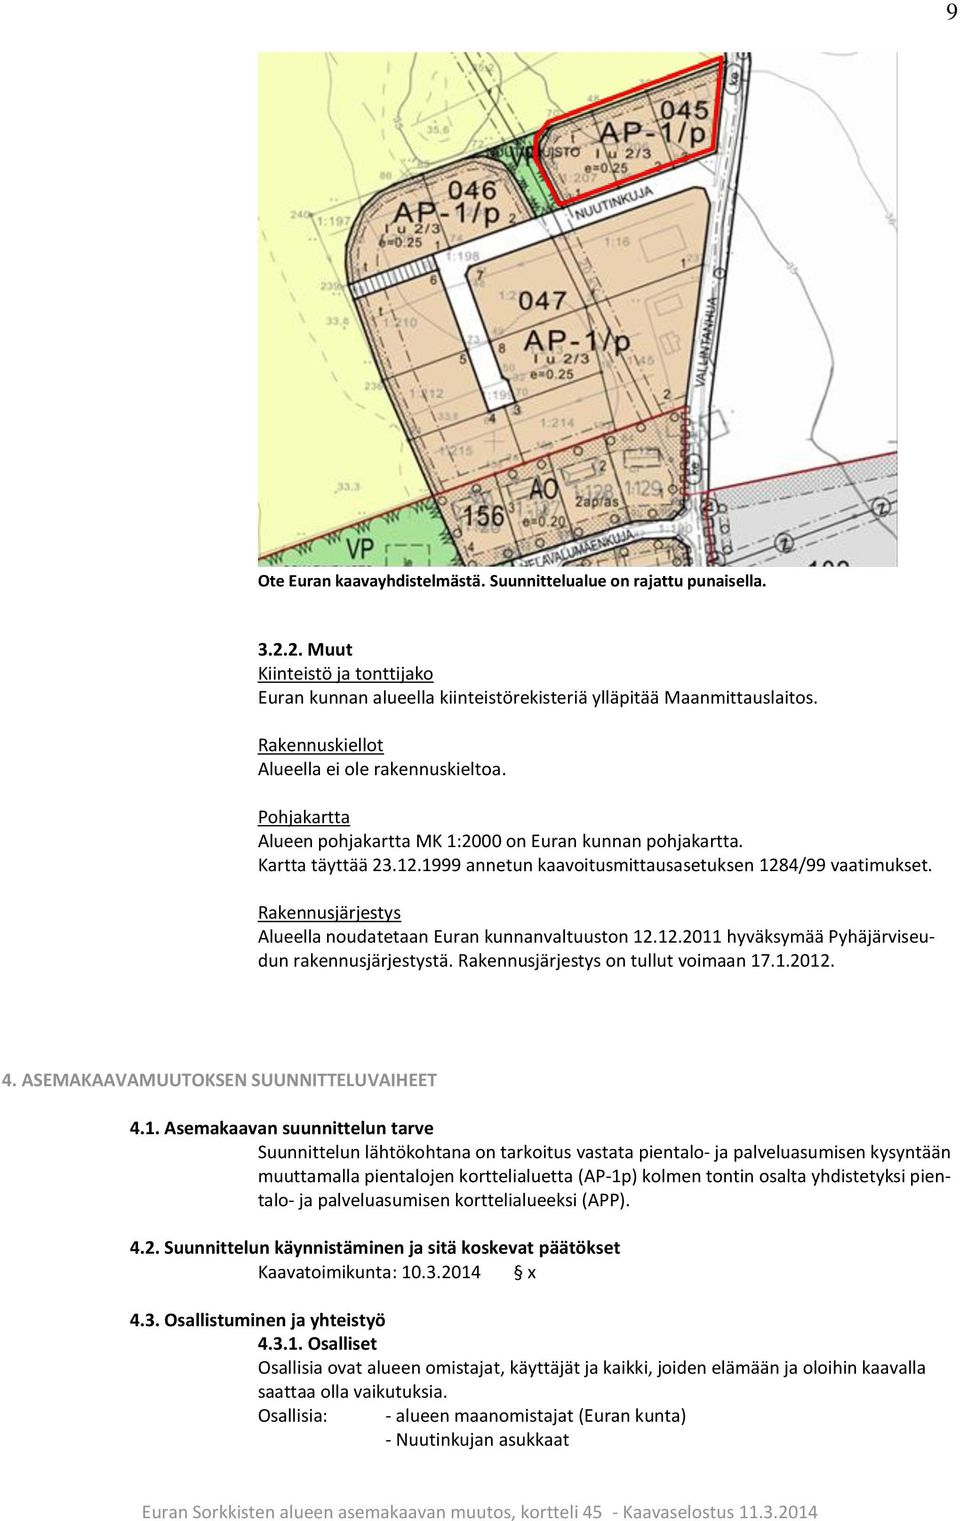 Rakennusjärjestys Alueella noudatetaan Euran kunnanvaltuuston 12.12.2011 hyväksymää Pyhäjärviseudun rakennusjärjestystä. Rakennusjärjestys on tullut voimaan 17.1.2012. 4.